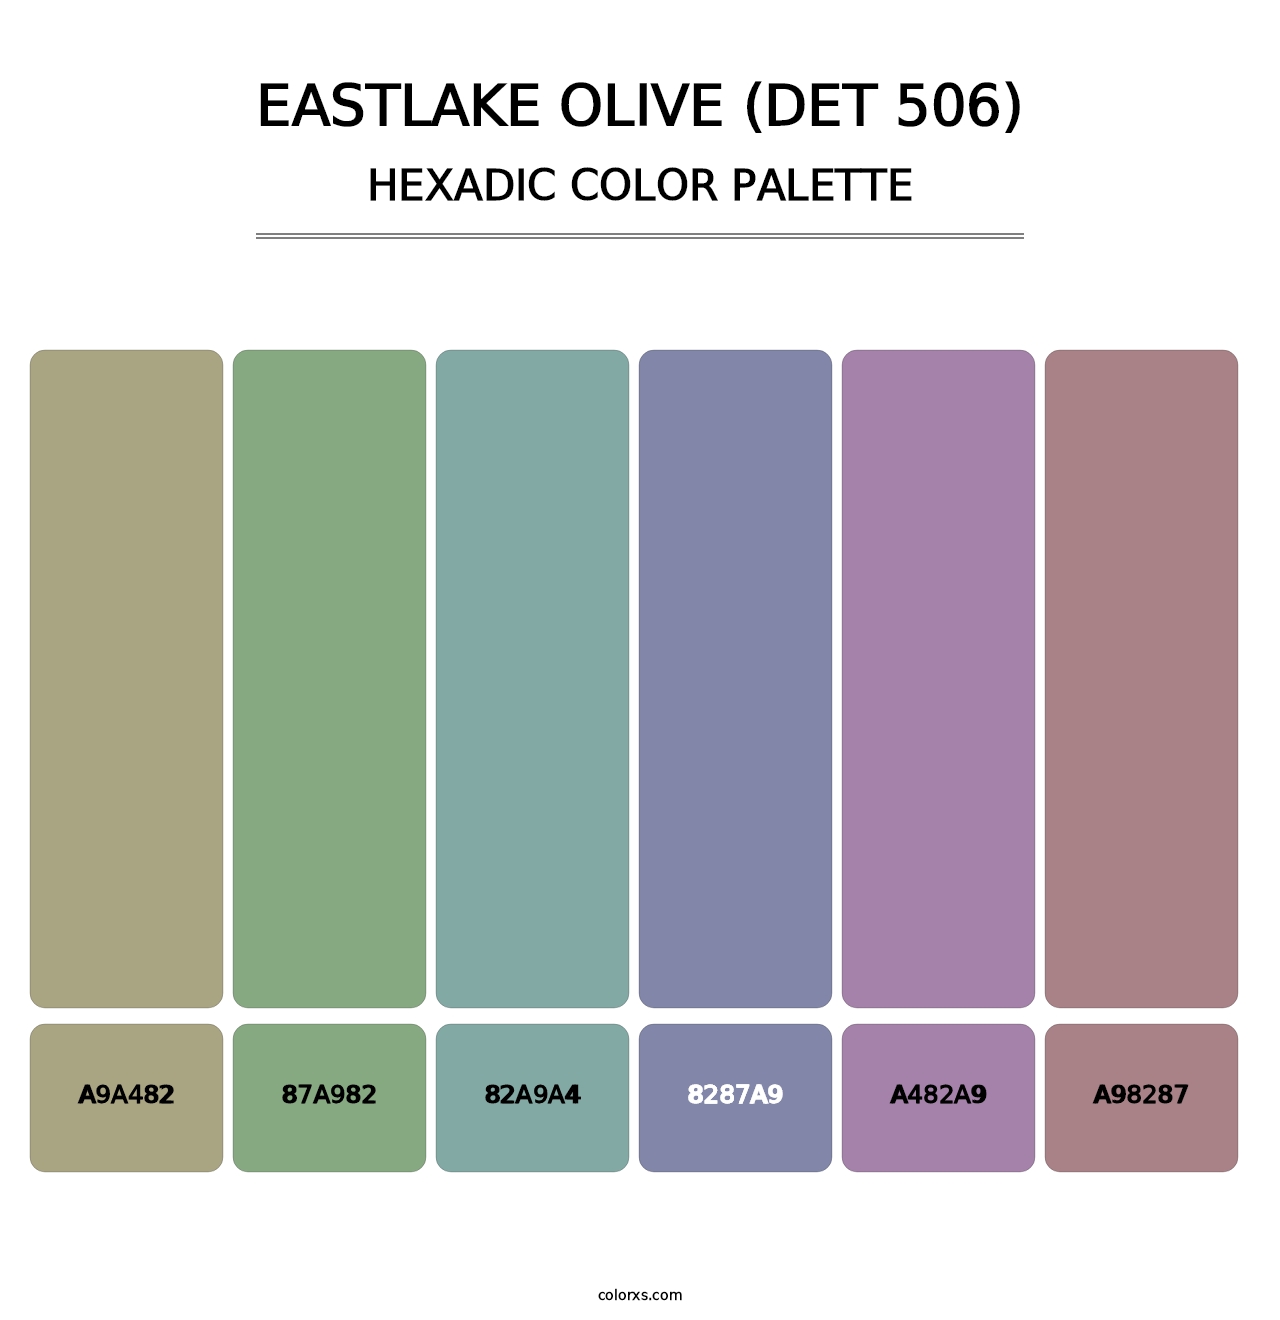 Eastlake Olive (DET 506) - Hexadic Color Palette